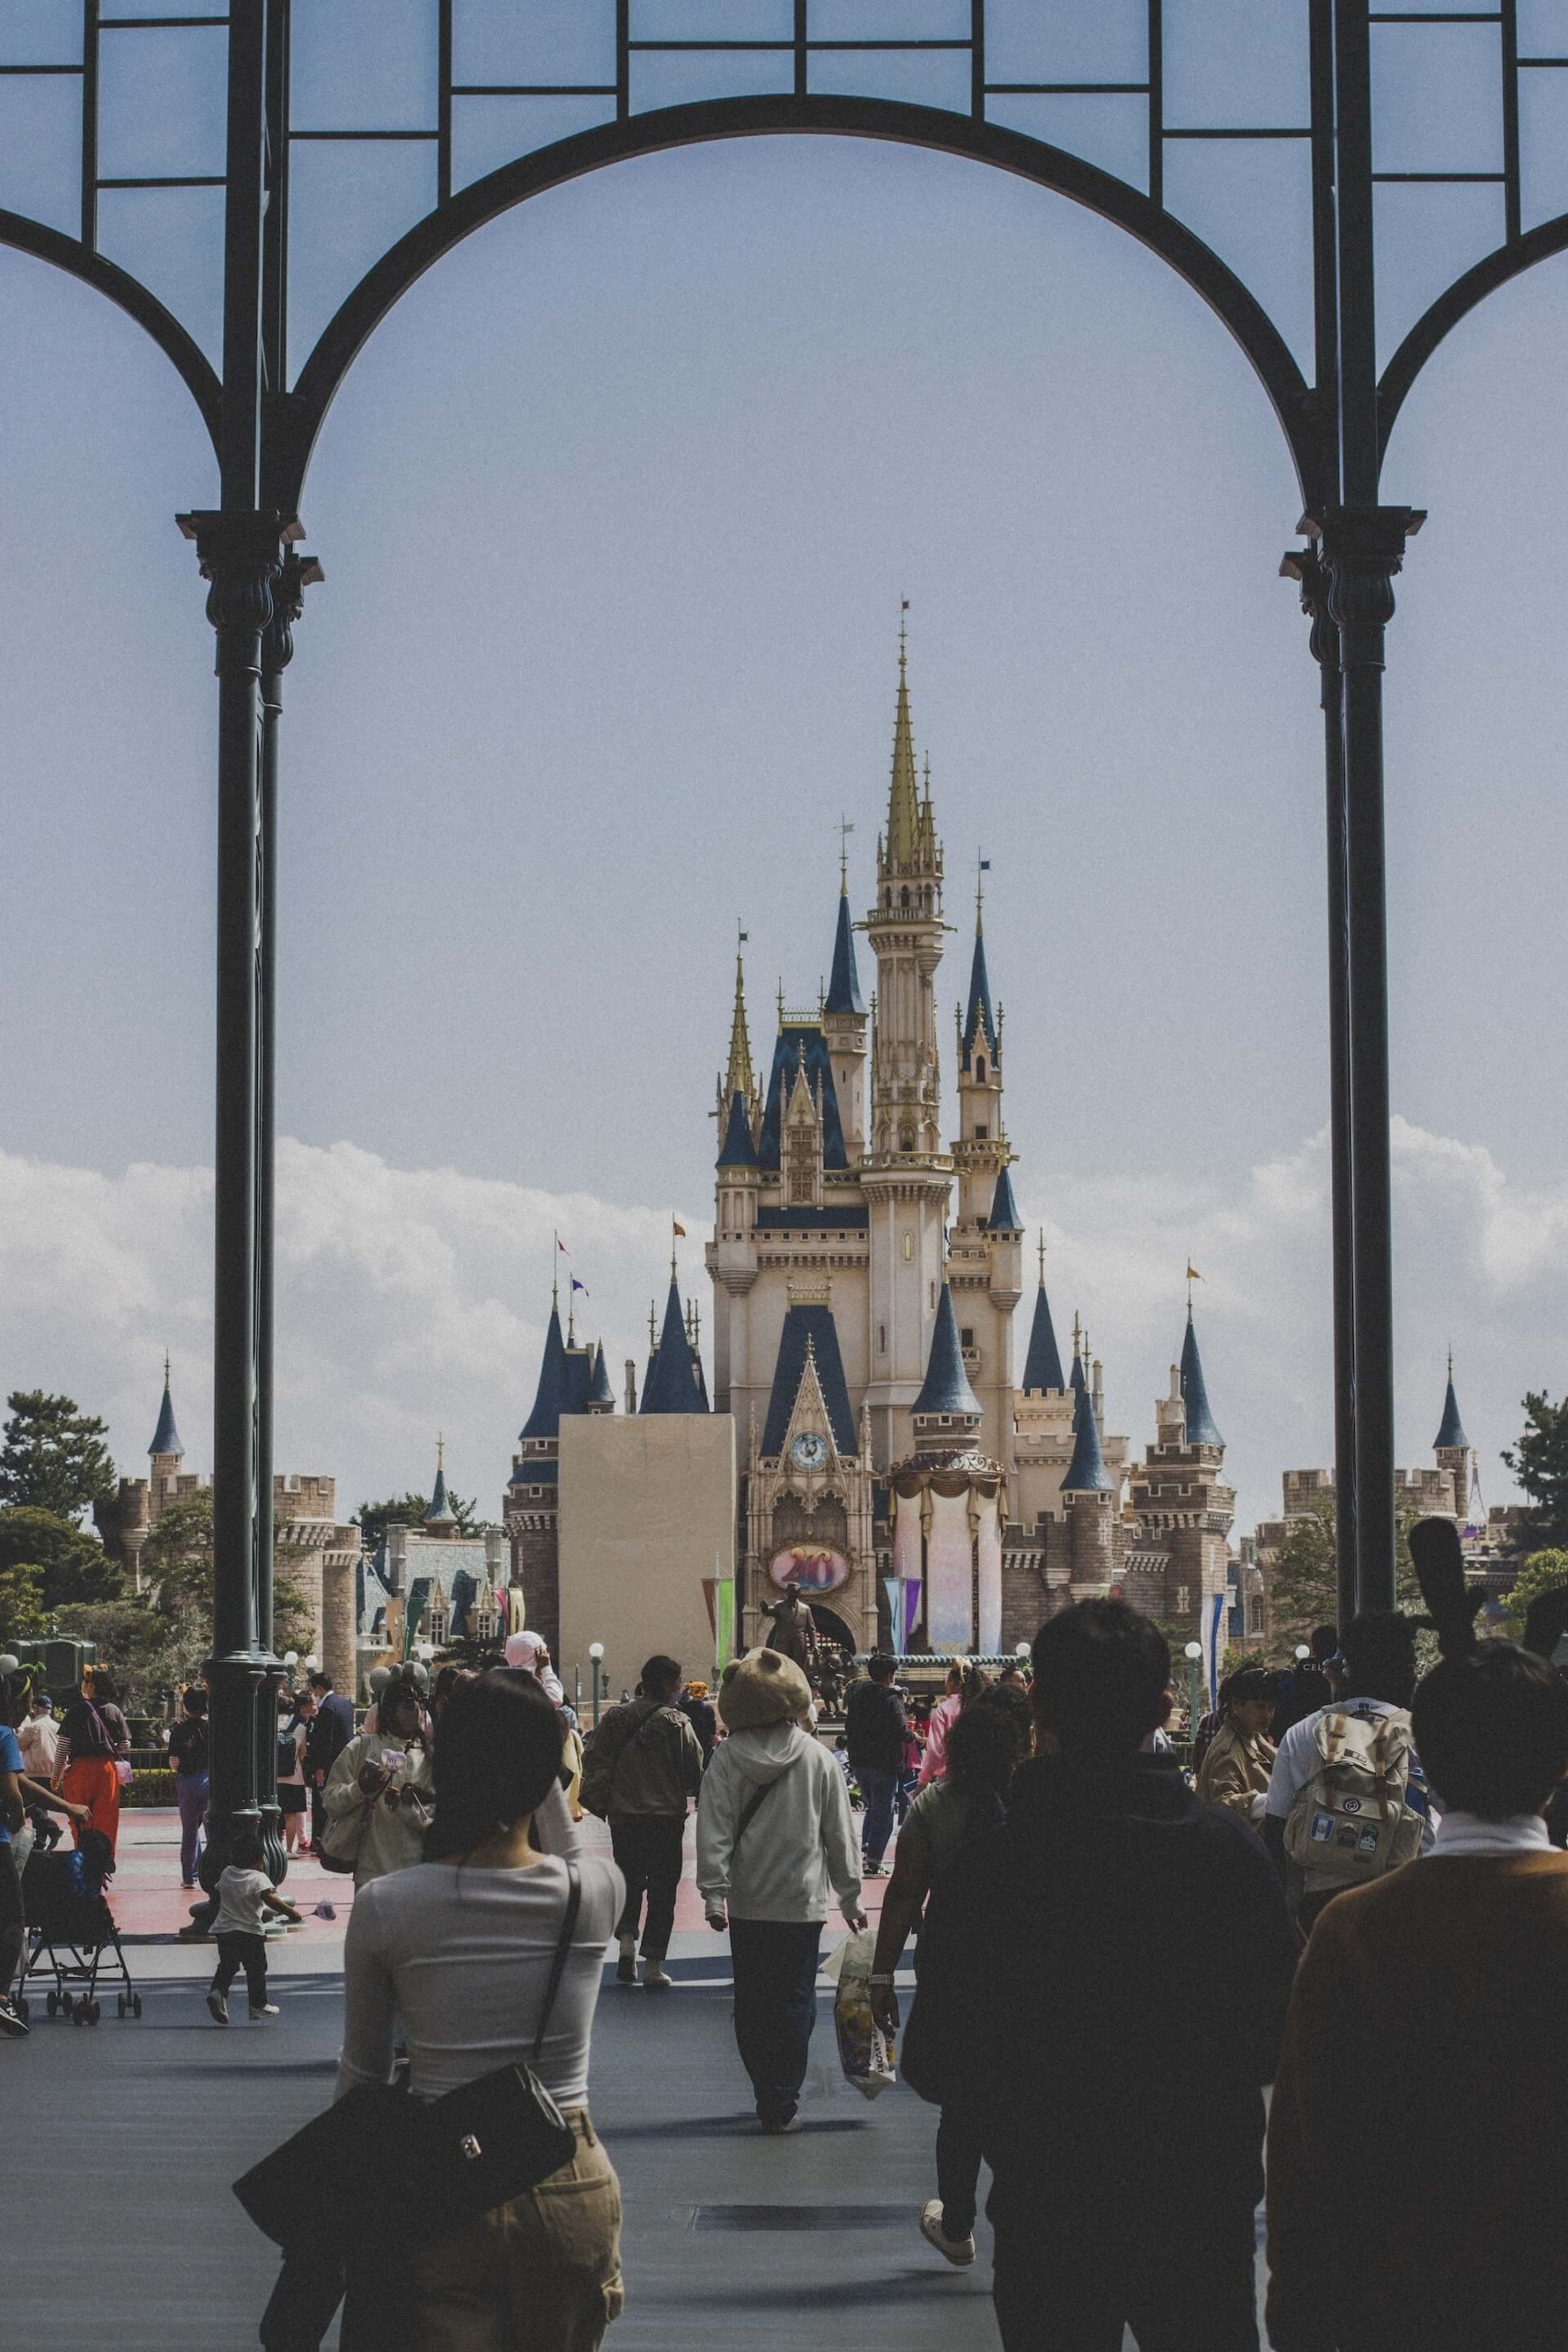 Disneyland à Tokyo